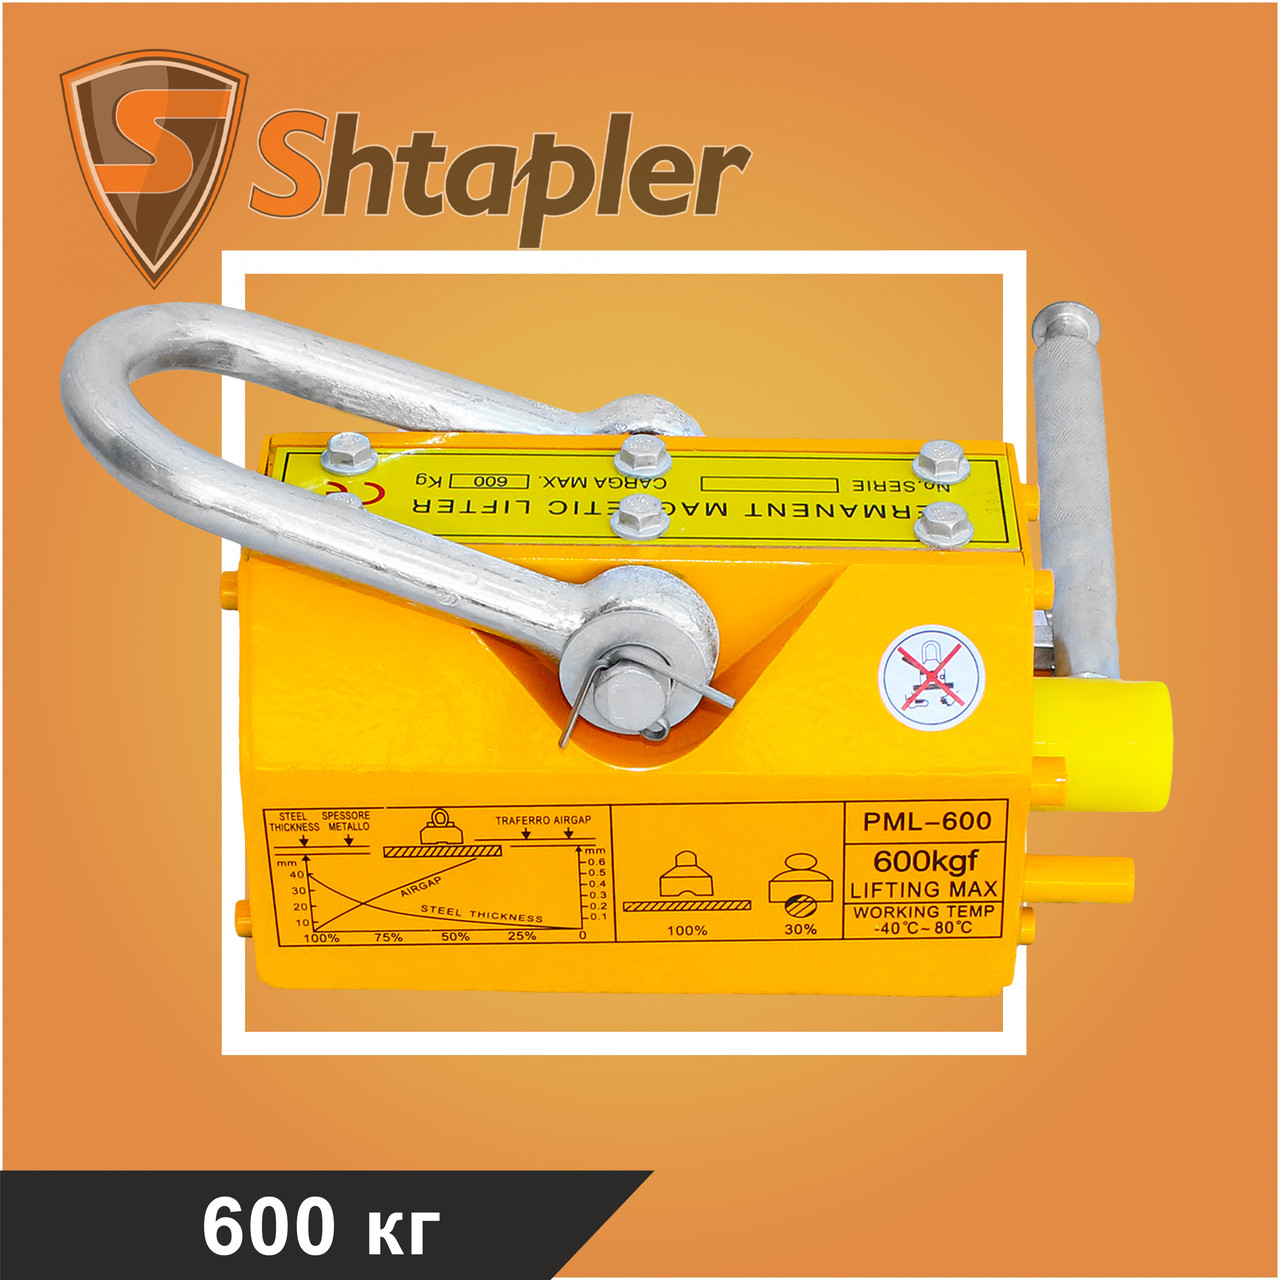 Захват магнитный Shtapler PML-A 600 (г/п 600 кг)